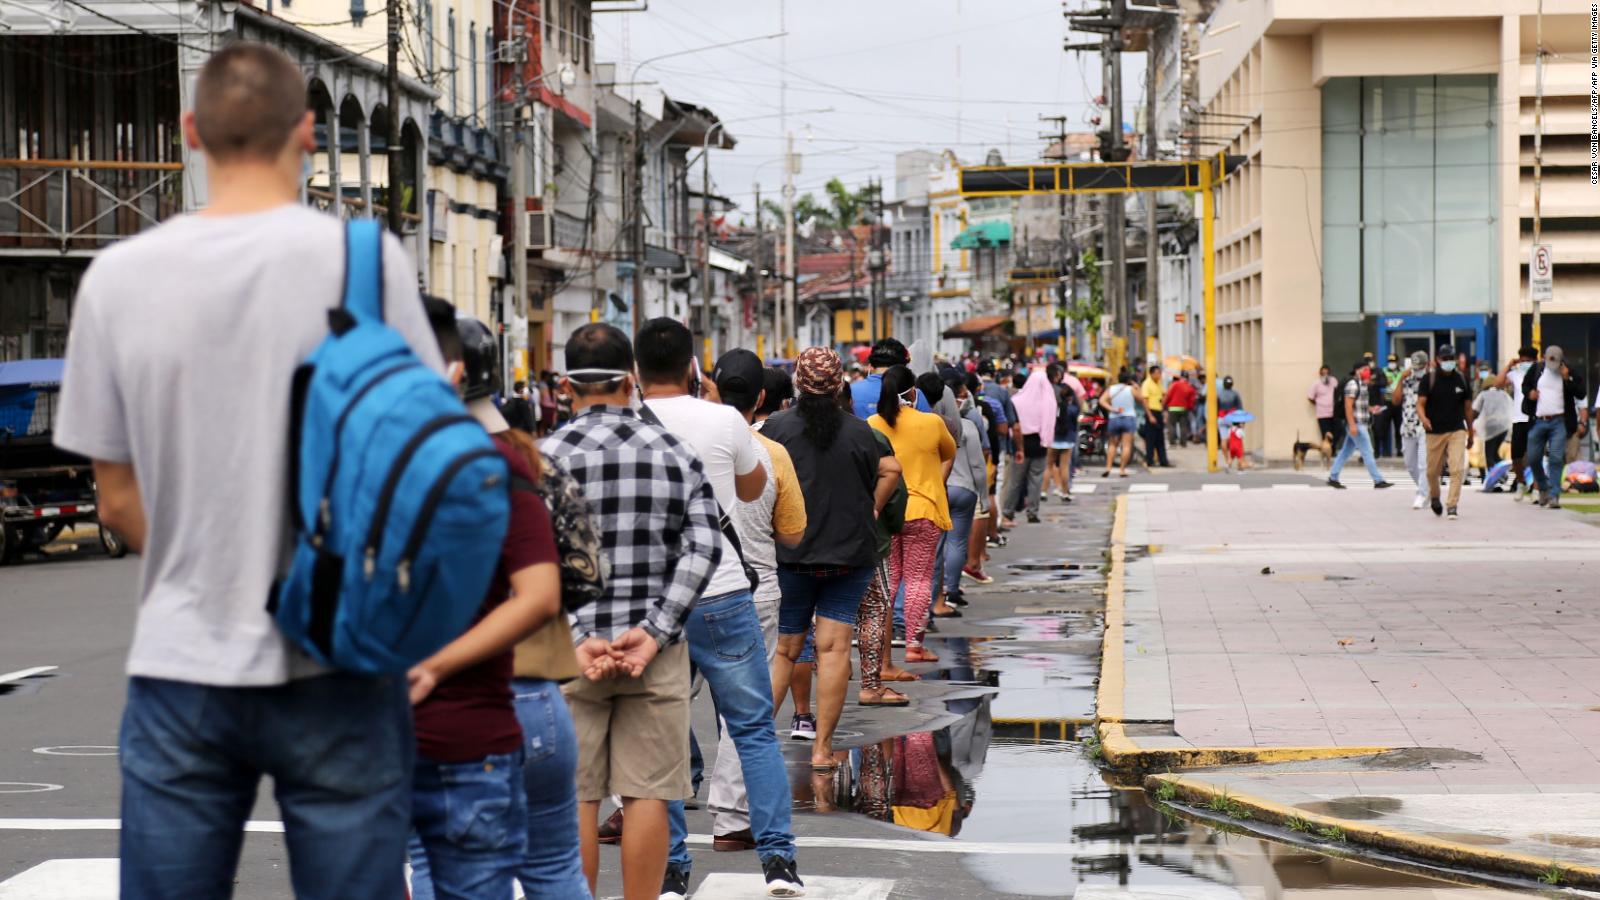 Perú: ¿Cuál es su plan para enfrentar los desafíos económicos?  |  Video